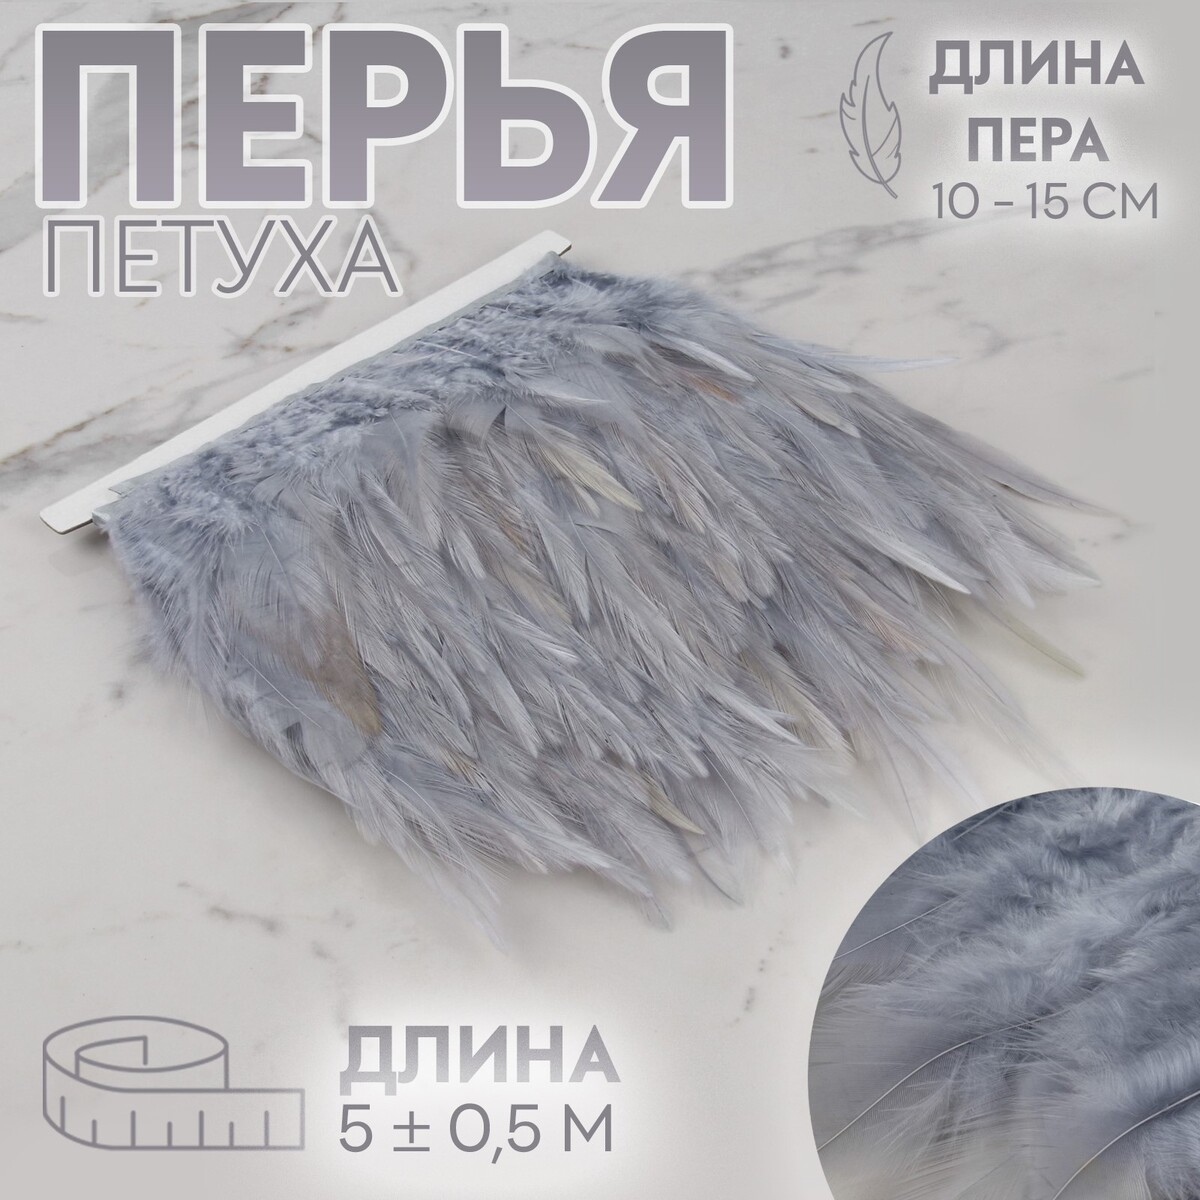 Тесьма с перьями петуха, 10-15 см, 5 ± 0,5 м, цвет серый тесьма с перьями индюка 13 17 см 5 ± 0 5 м пудровый